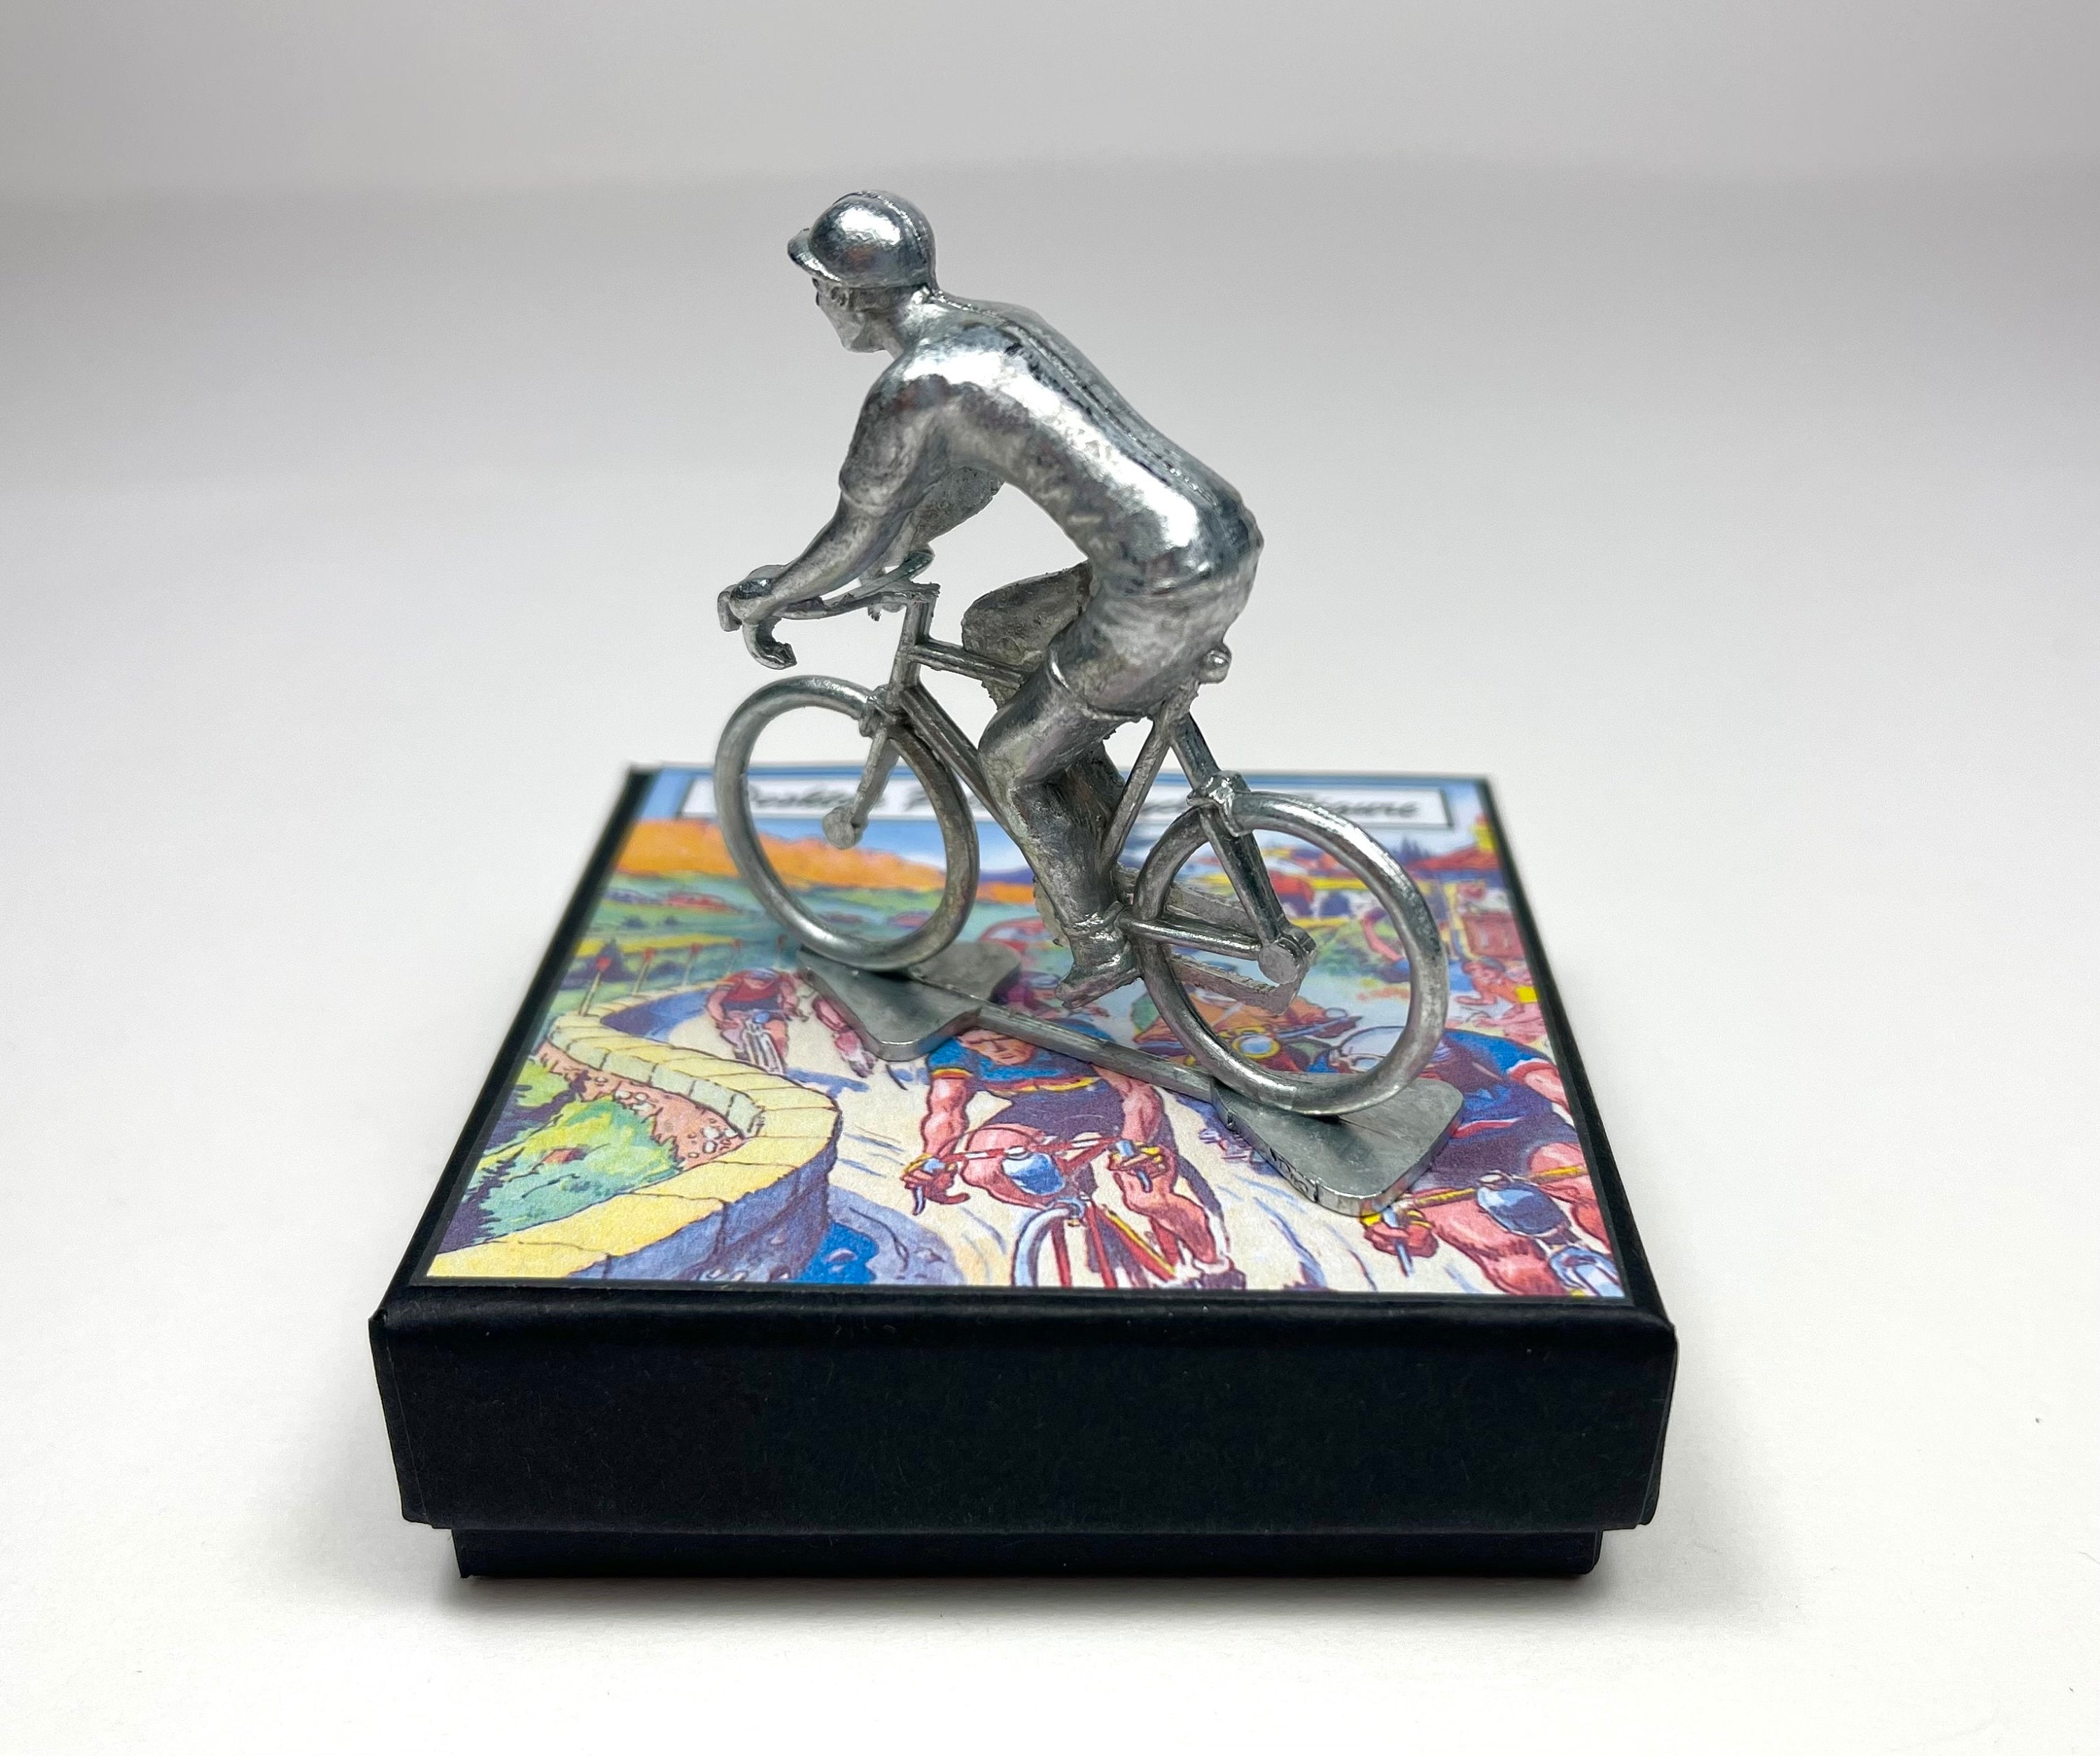 Cycliste Wout van Aert - Cyclistes figurines peints à la main